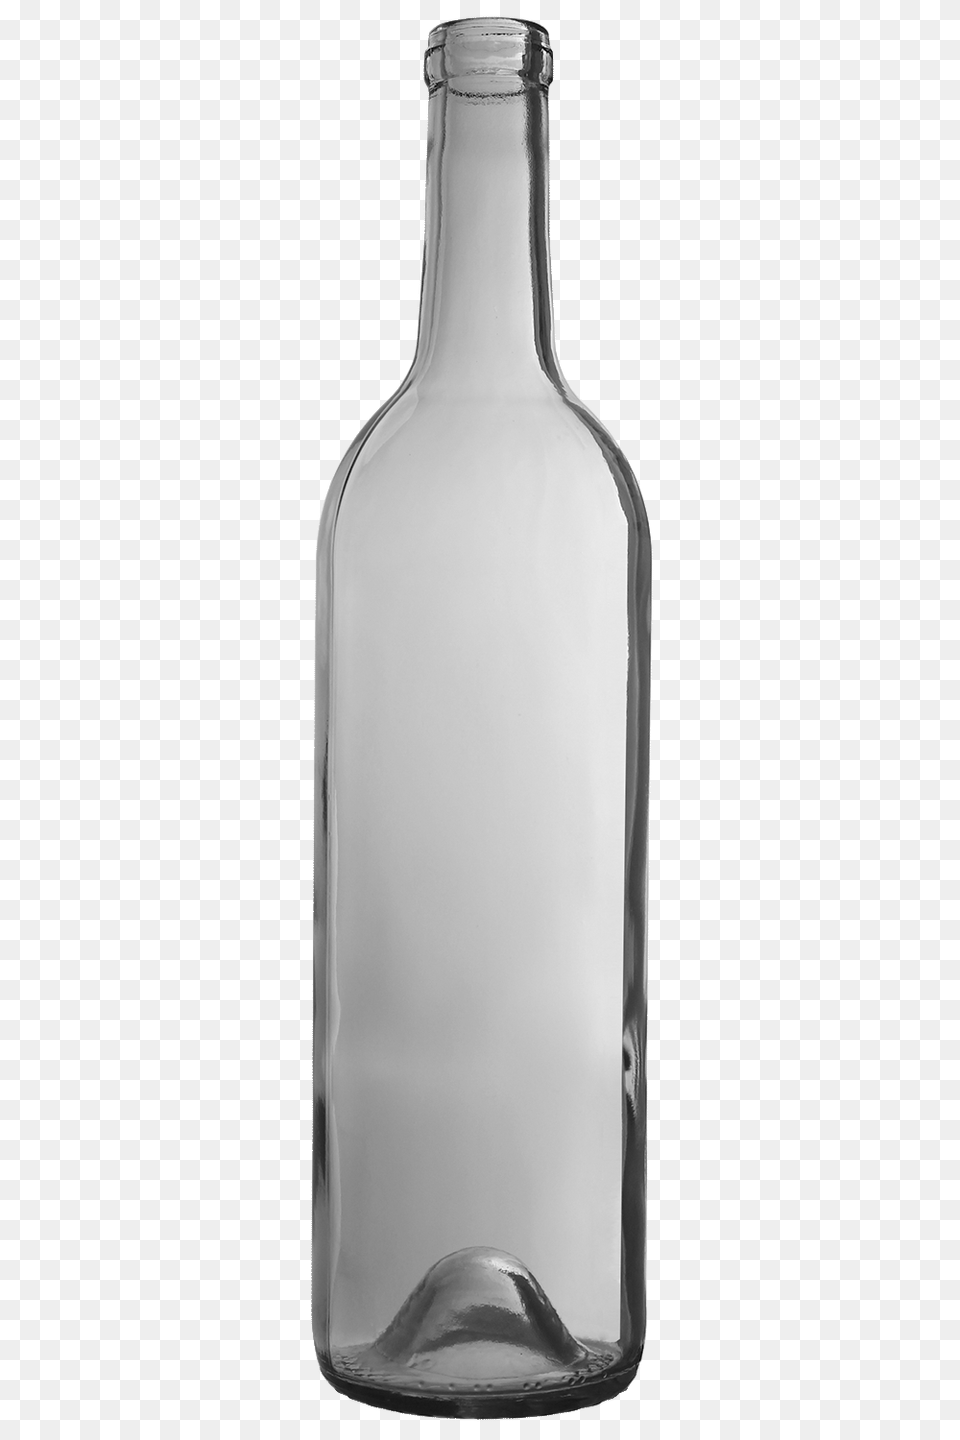 Bottles Aac Wine, Bottle, Glass, Jar, Alcohol Png Image